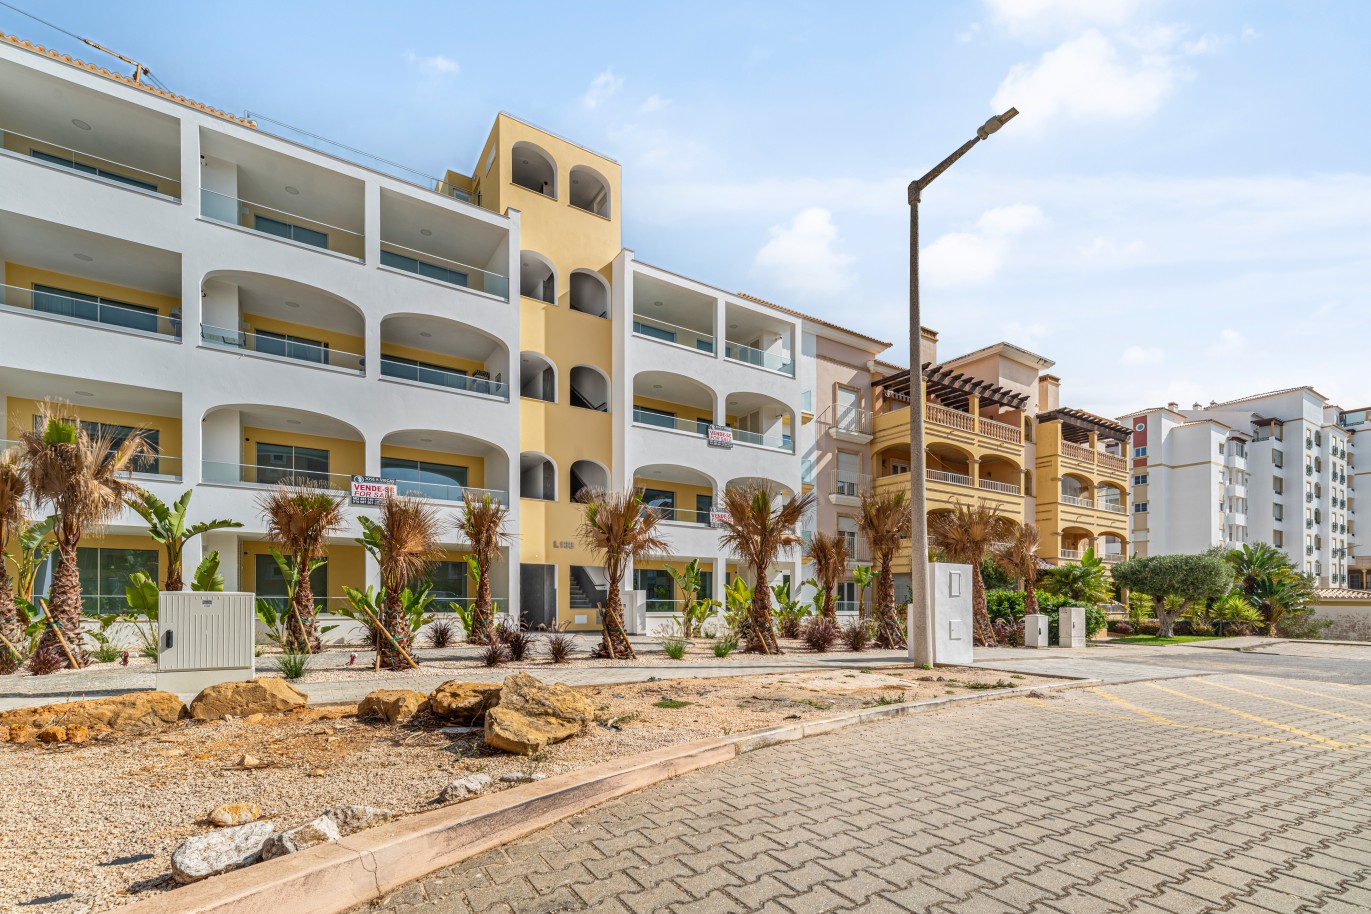 Verkauf einer Wohnung, mit Terrasse, Lagos, Algarve, Portugal_238620